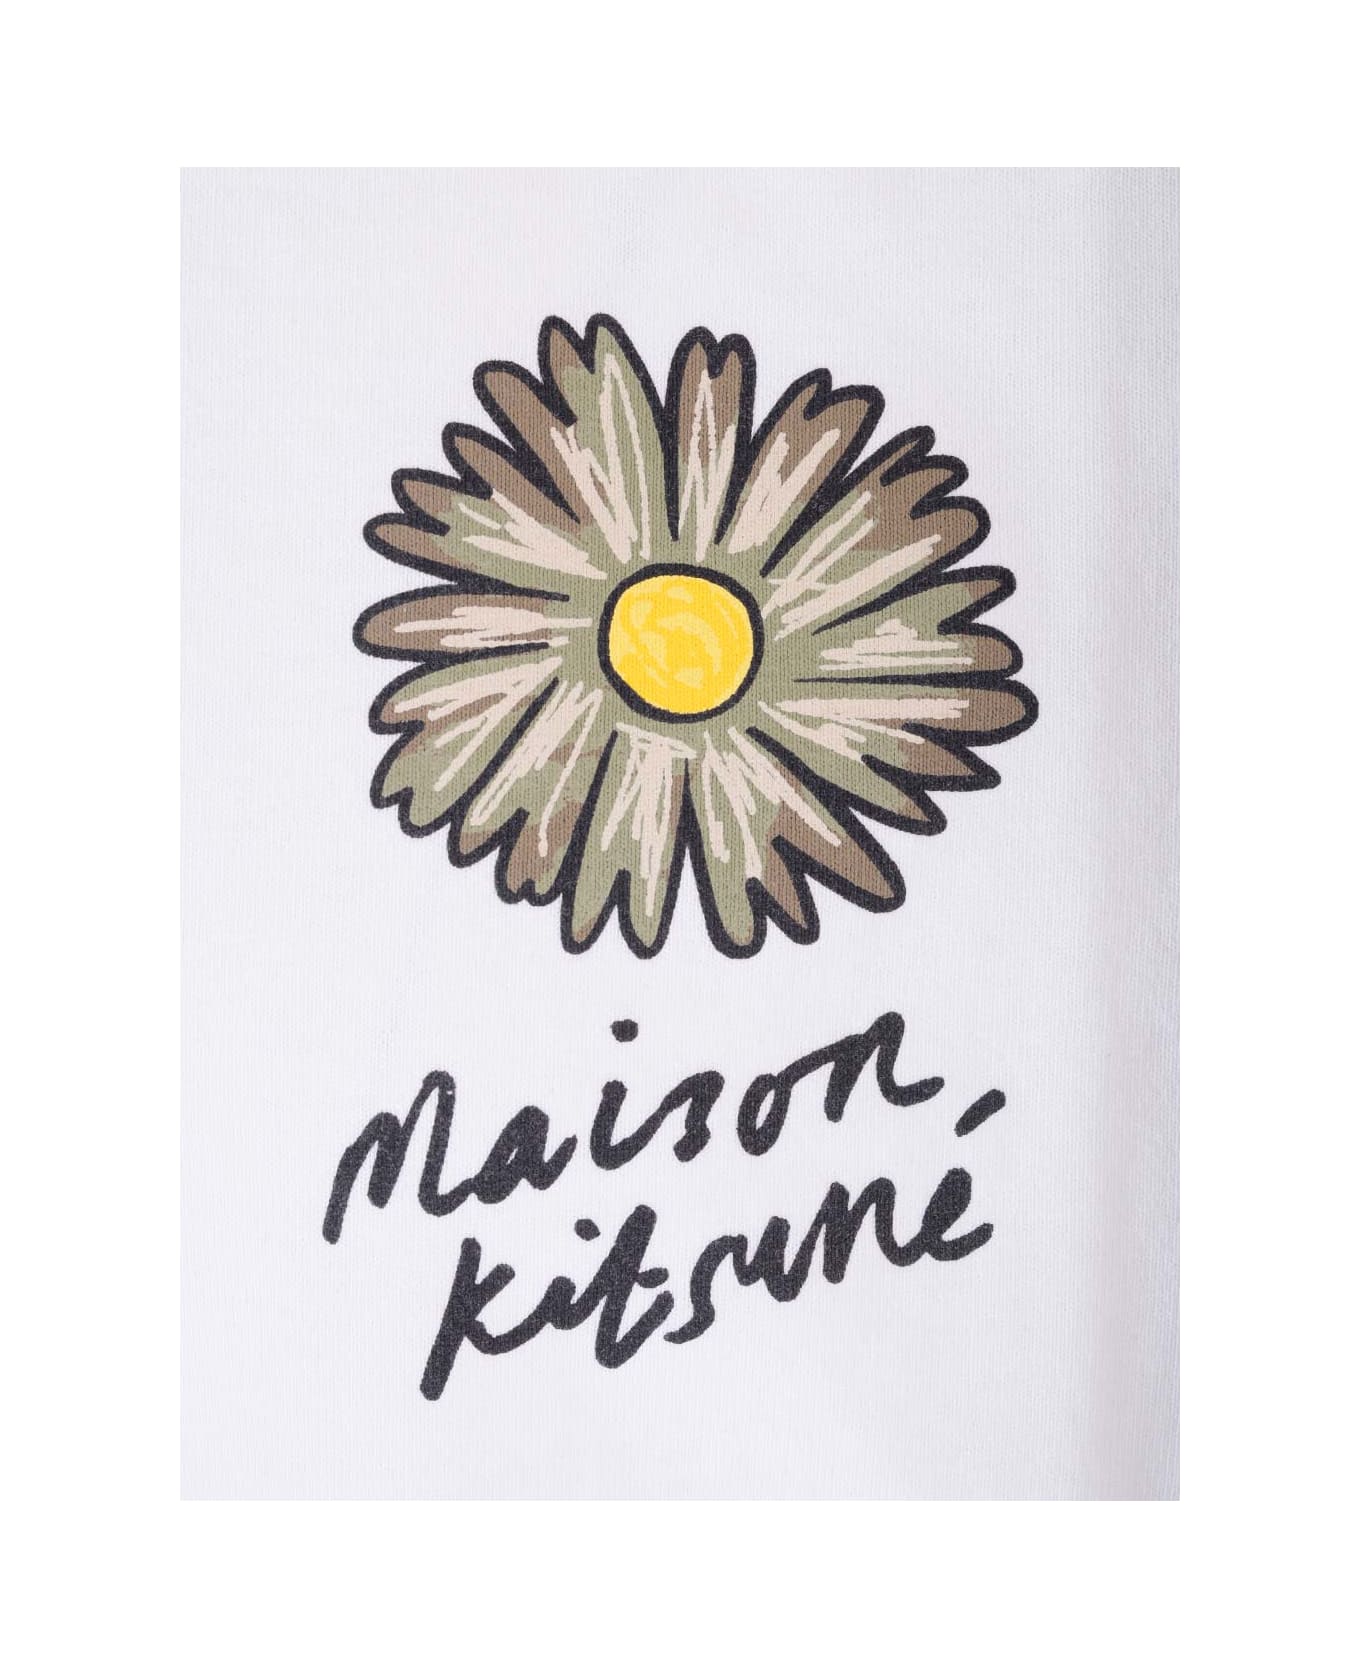 Maison Kitsuné White 'floating Flower' T-shirt - White